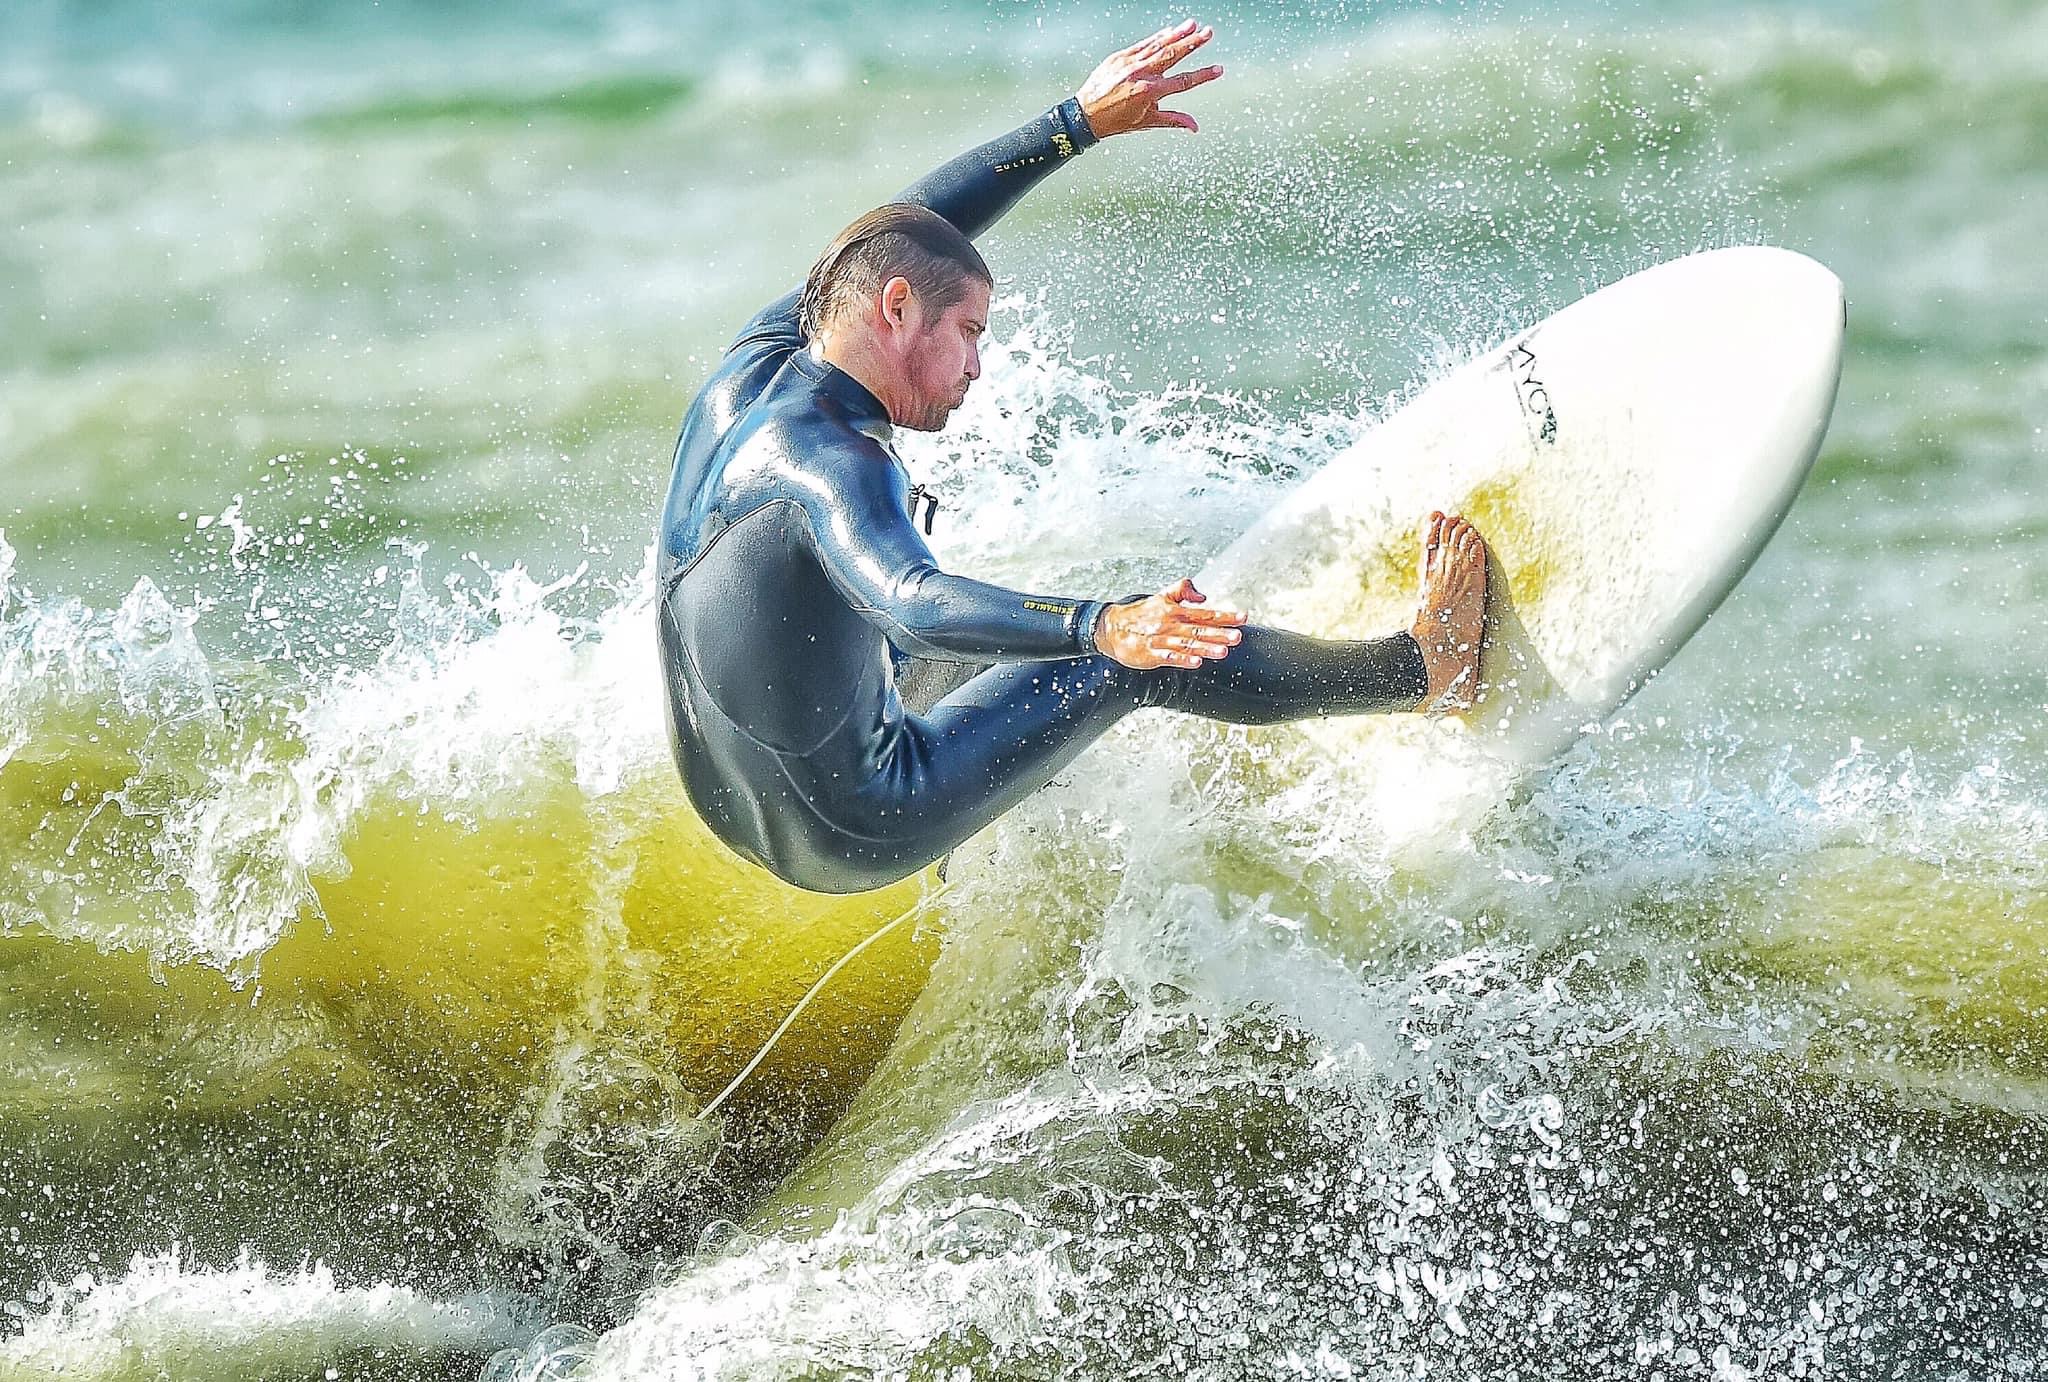 Braden Bacha Surfing the Great LakesLake Erie, Penn